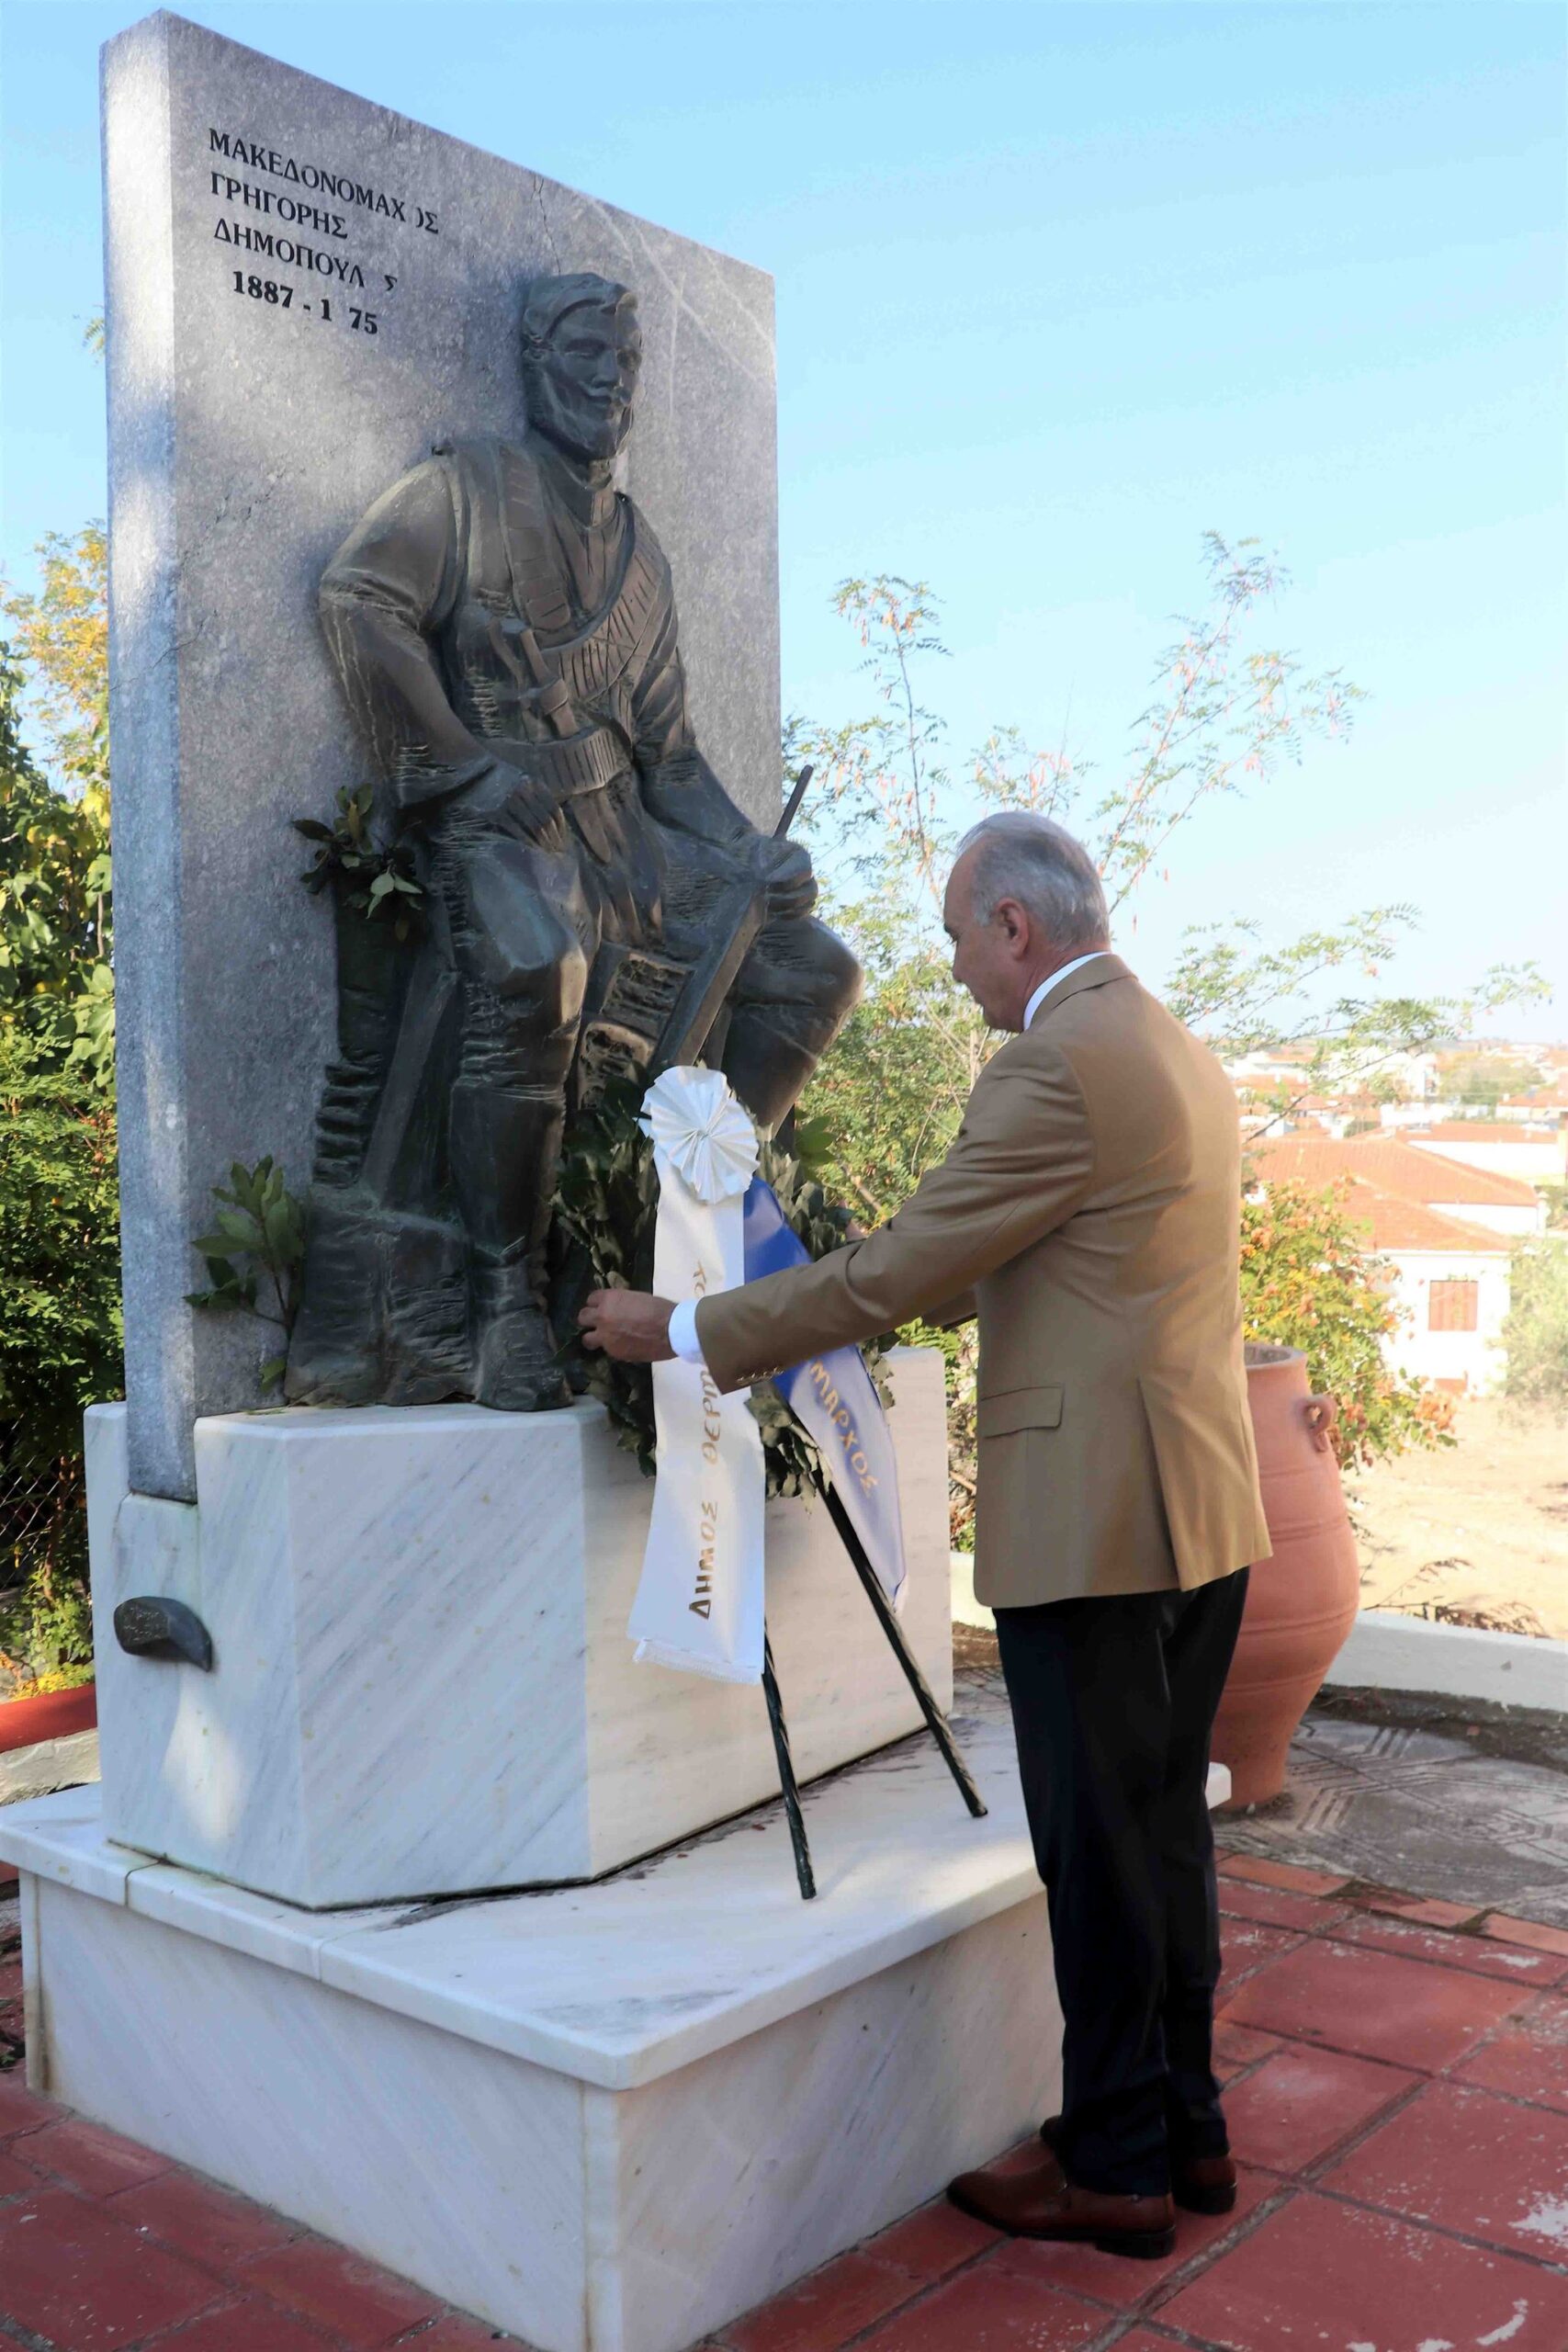 Ο Δήμος Θερμαϊκού τίμησε τον Μακεδονικό αγώνα (ΦΩΤΟΡΕΠΟΡΤΑΖ)